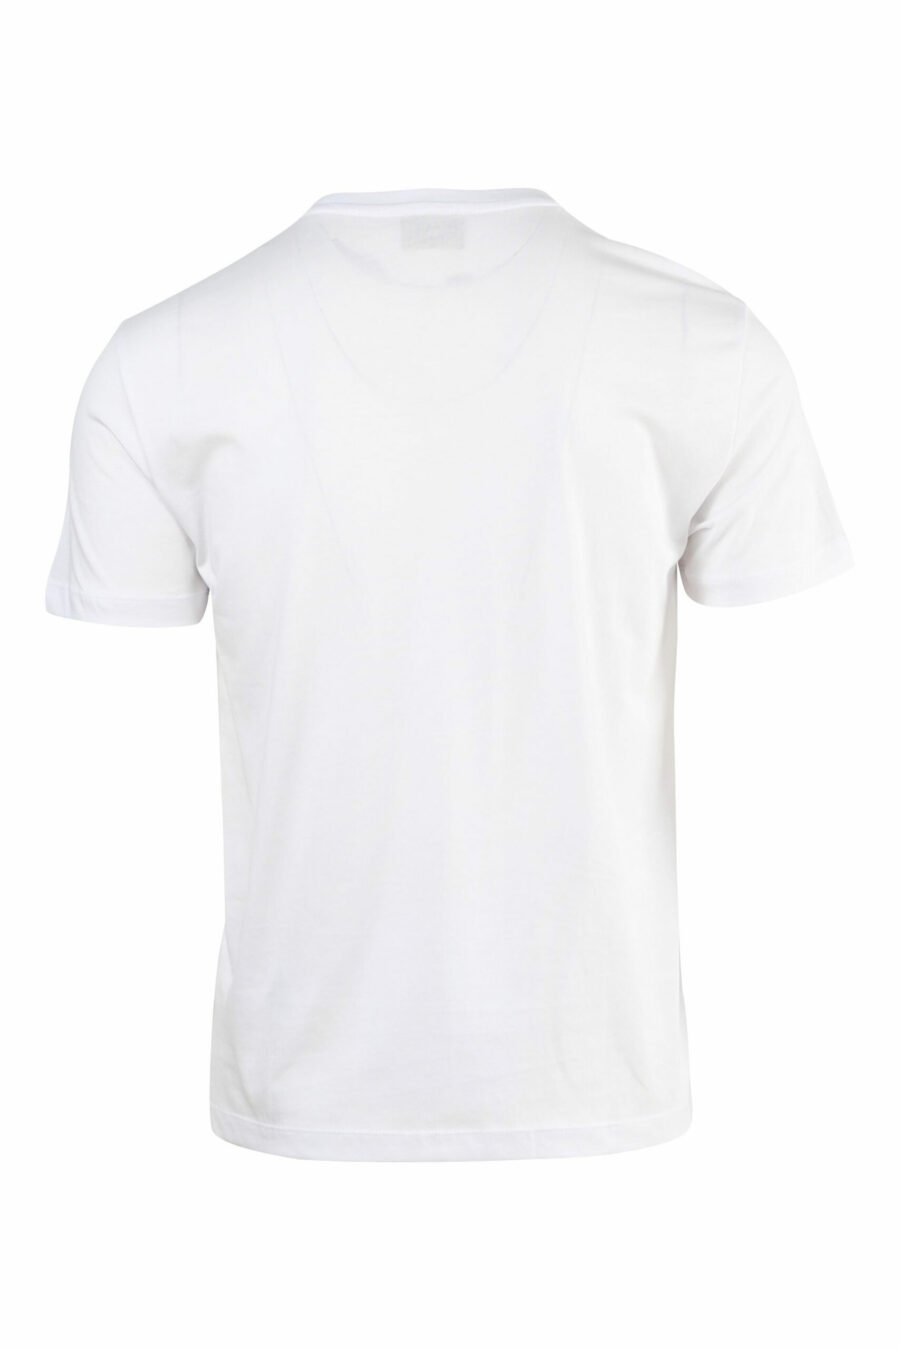 Weißes T-Shirt mit goldenem "lux identity"-Mini-Logo - 8057767515720 skaliert